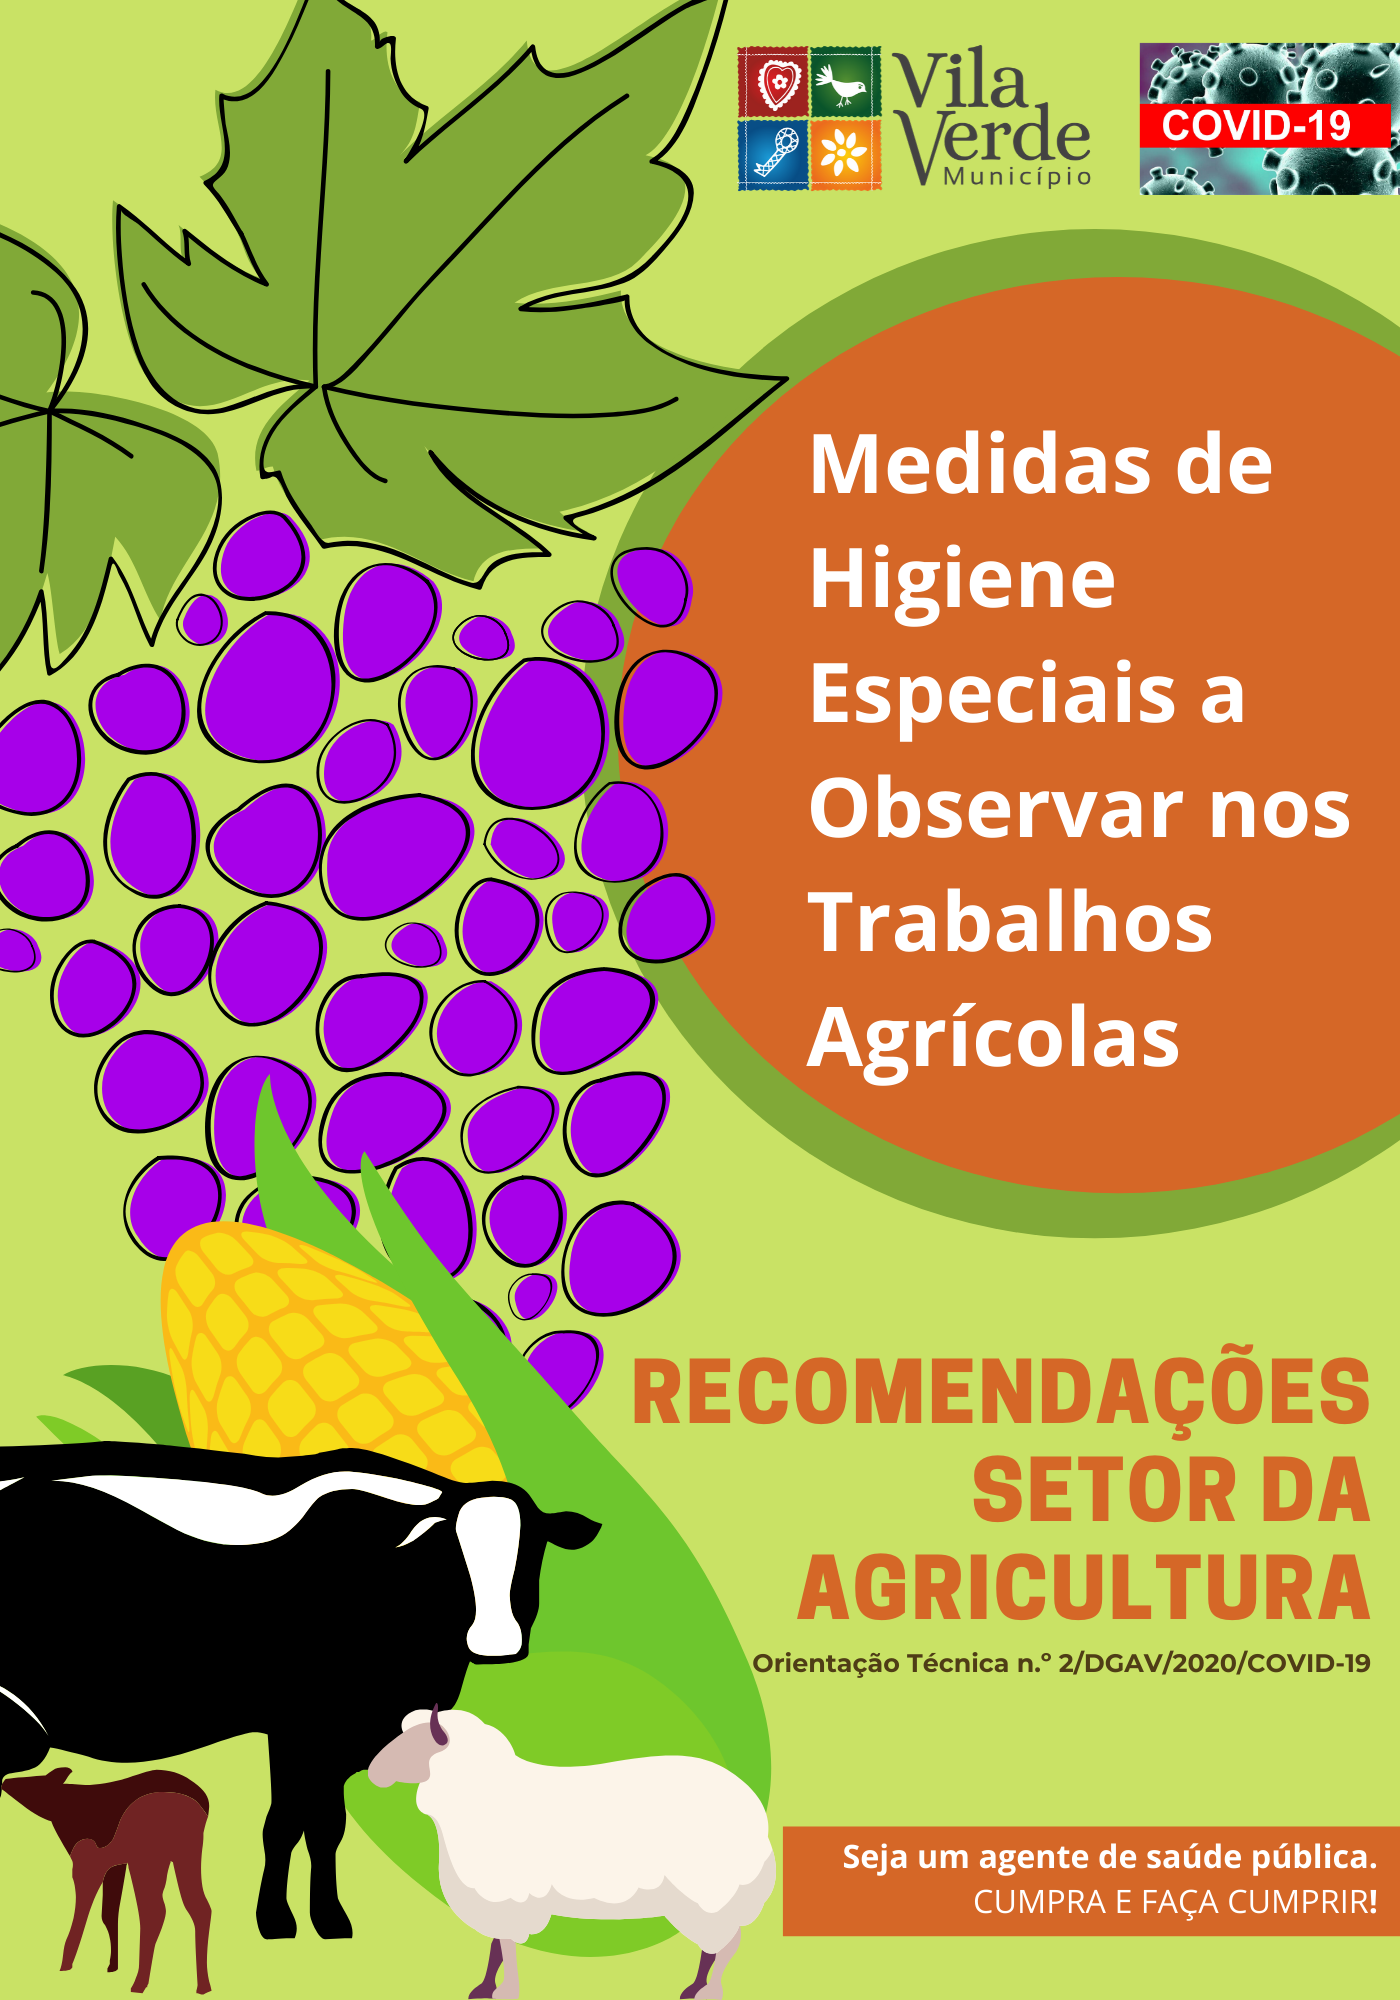 603085_agriculturamedidasdeseguranC3A7a-alto